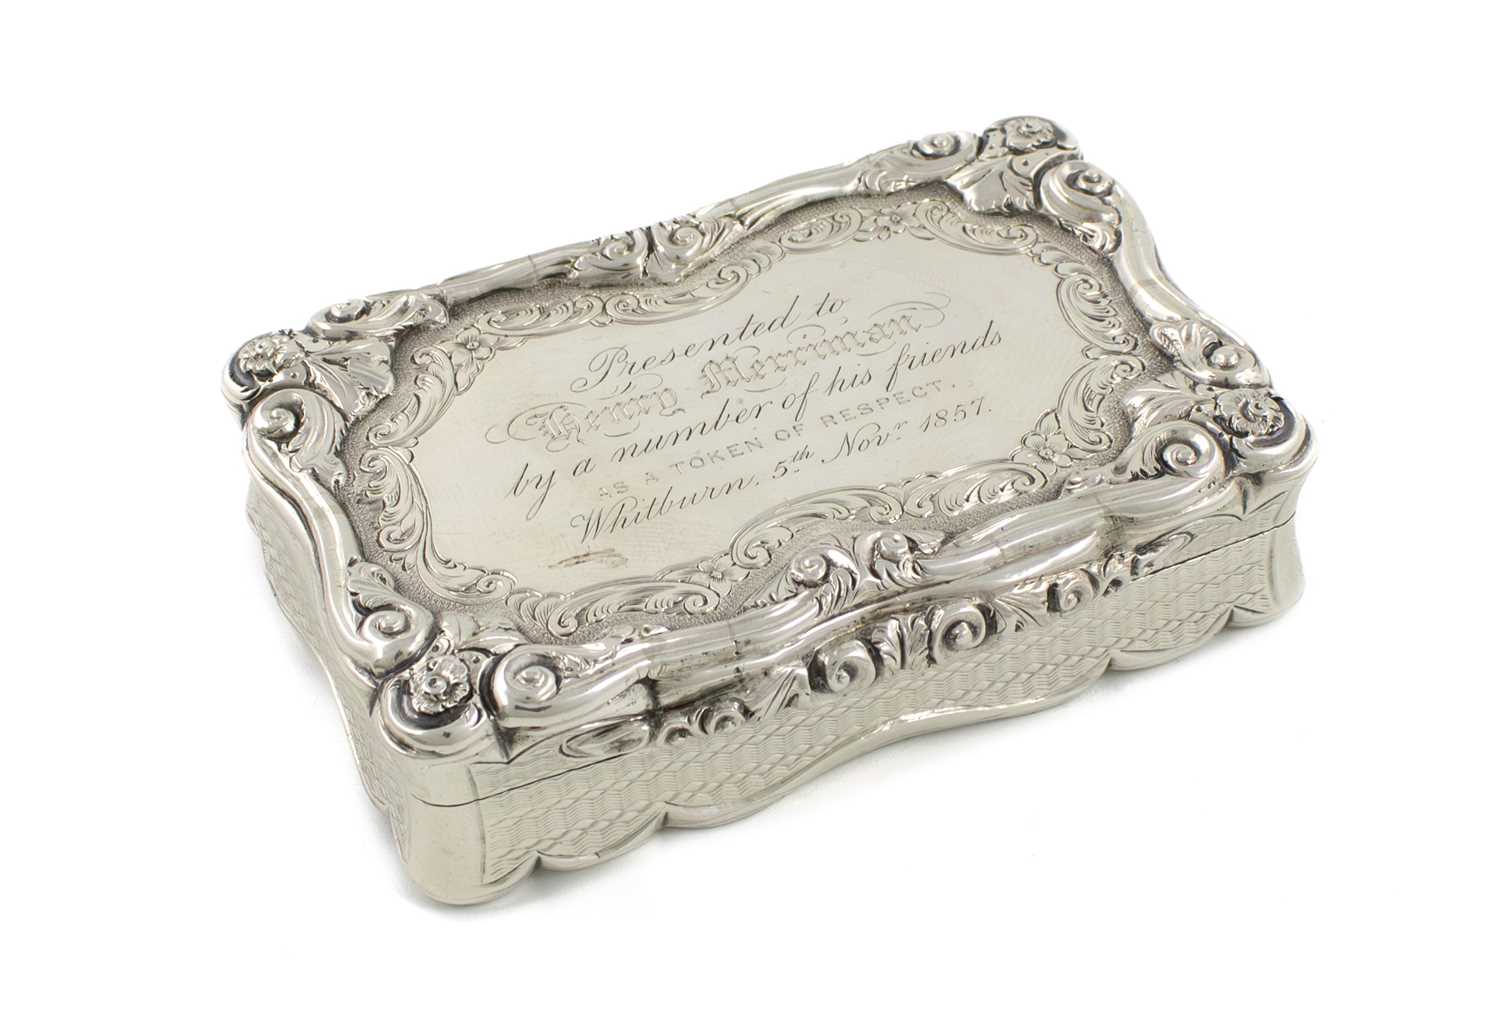 A Victorian silver presentation snuff box, by David Pettifer, Birmingham 1854, rectangular form,